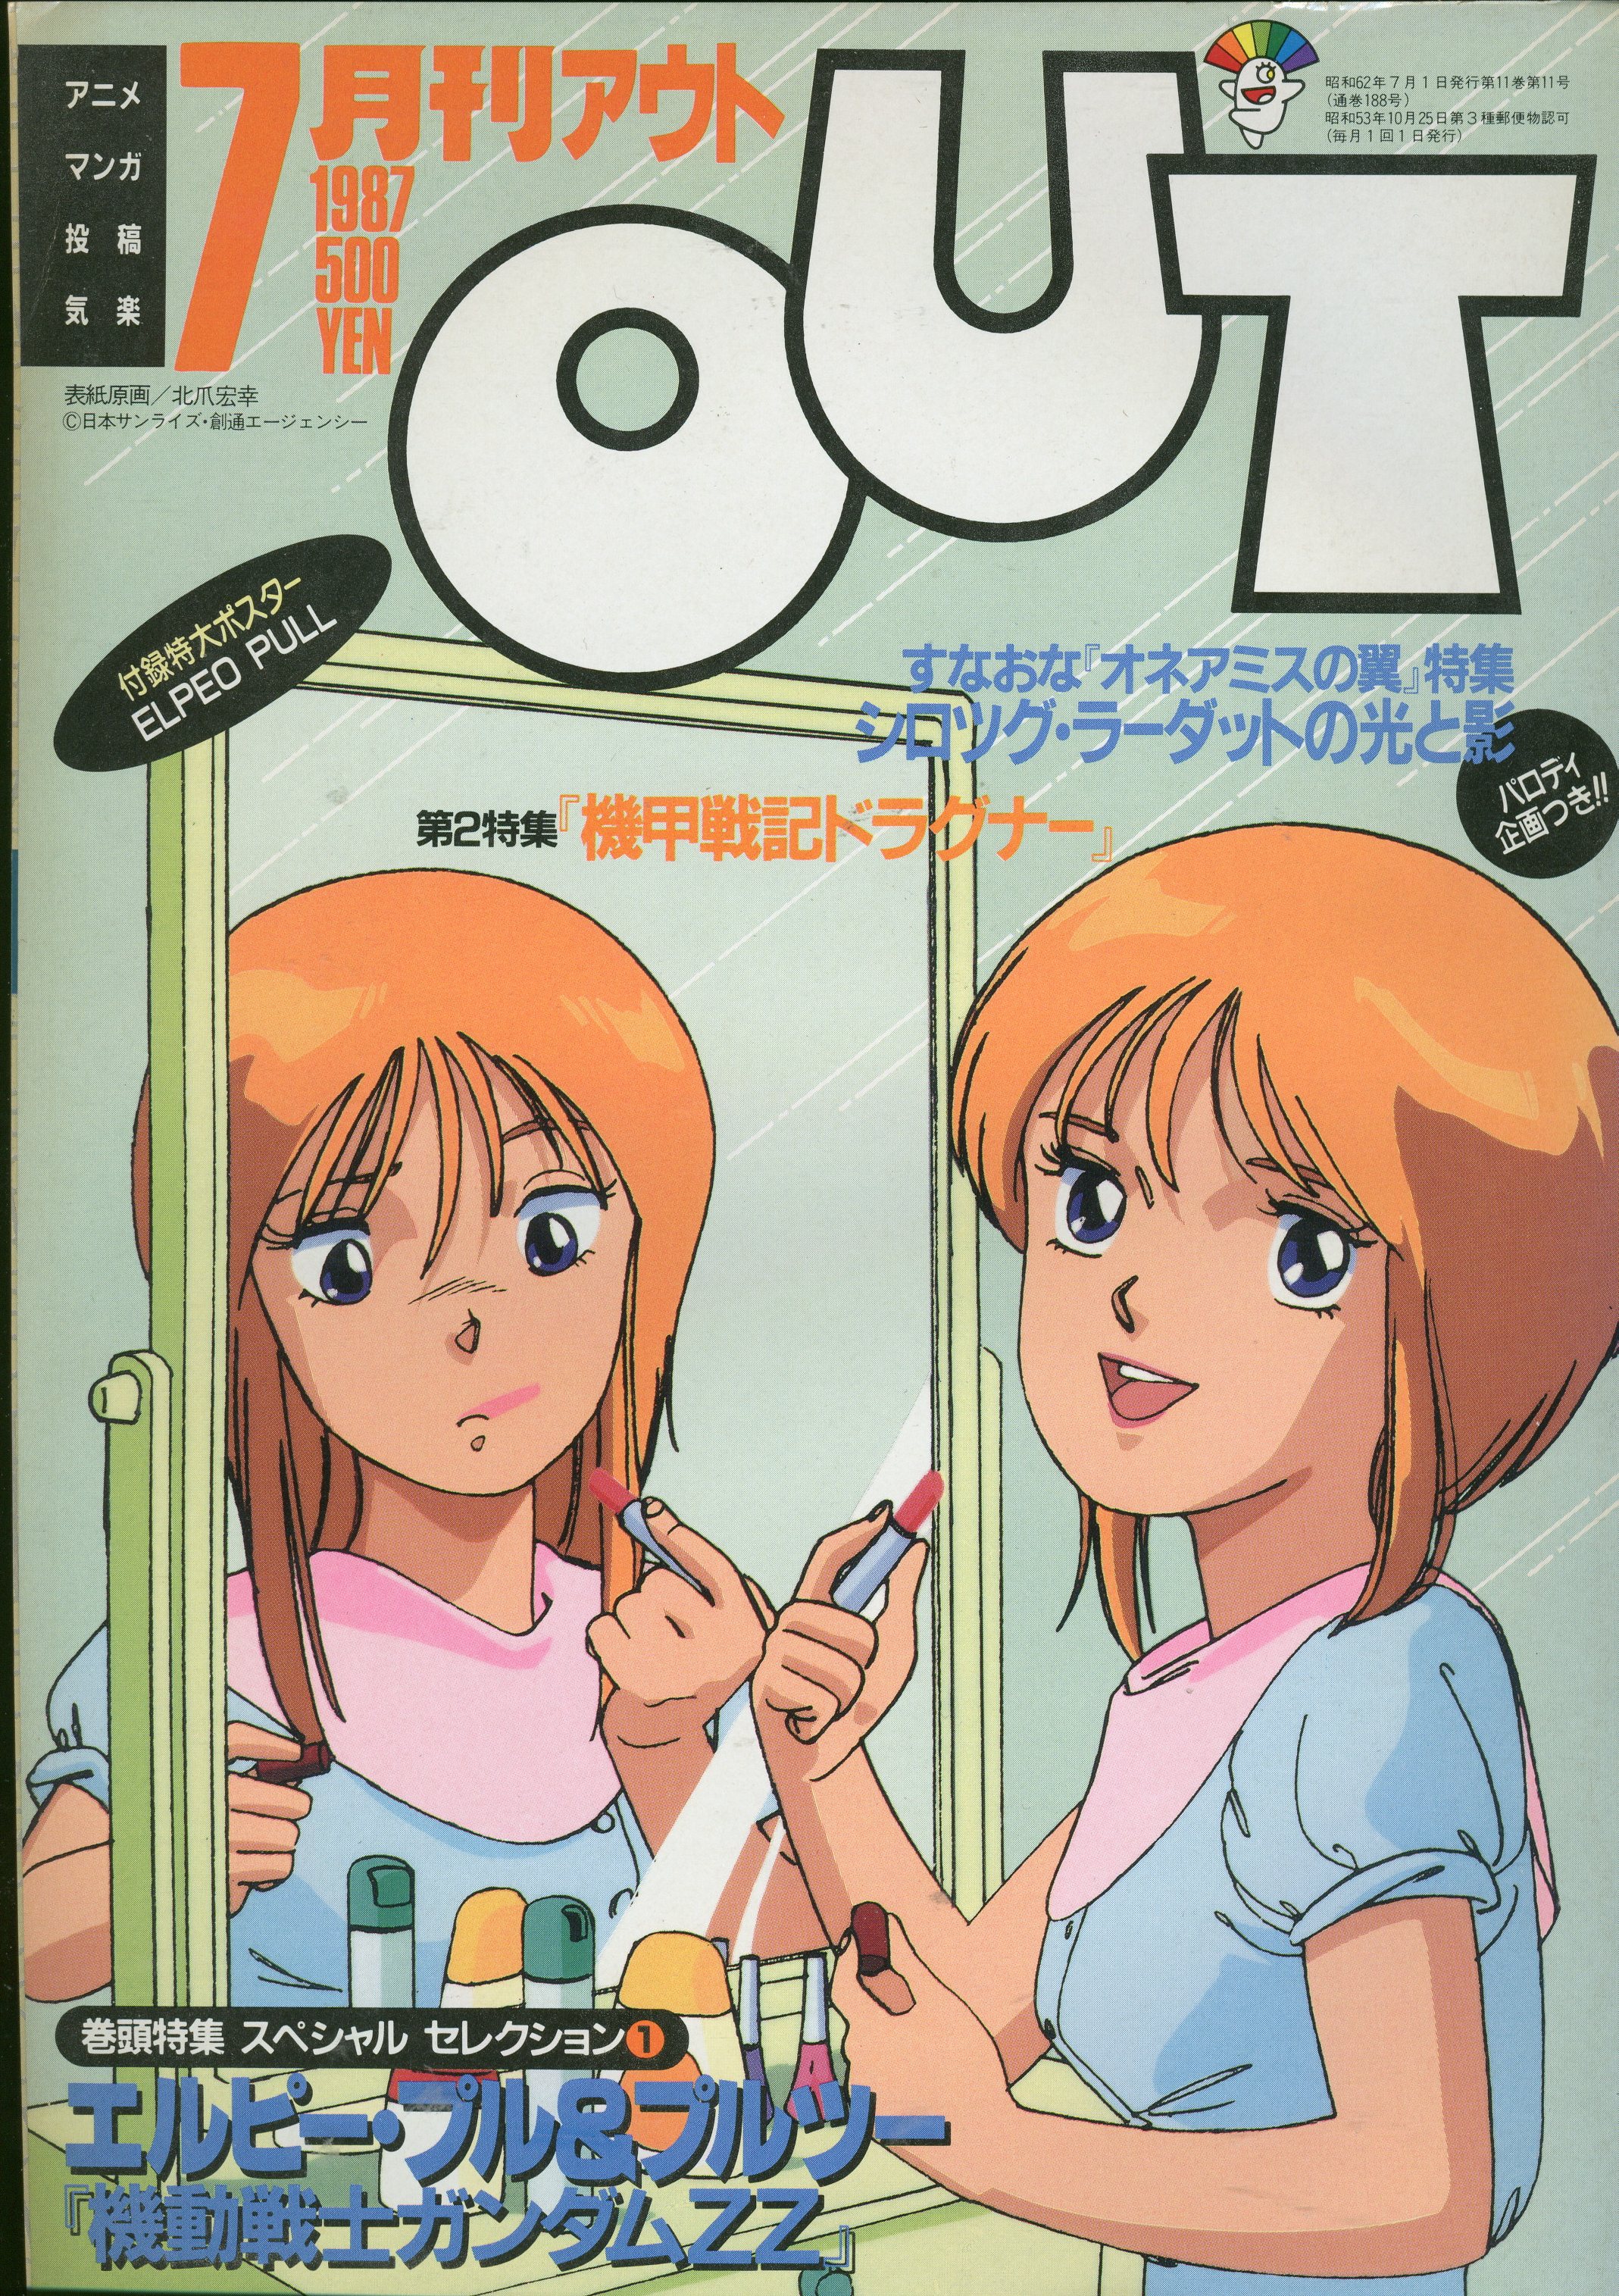 日本最大の MUSIC MAGAZINE 1987年7月1日発行 www.hallo.tv